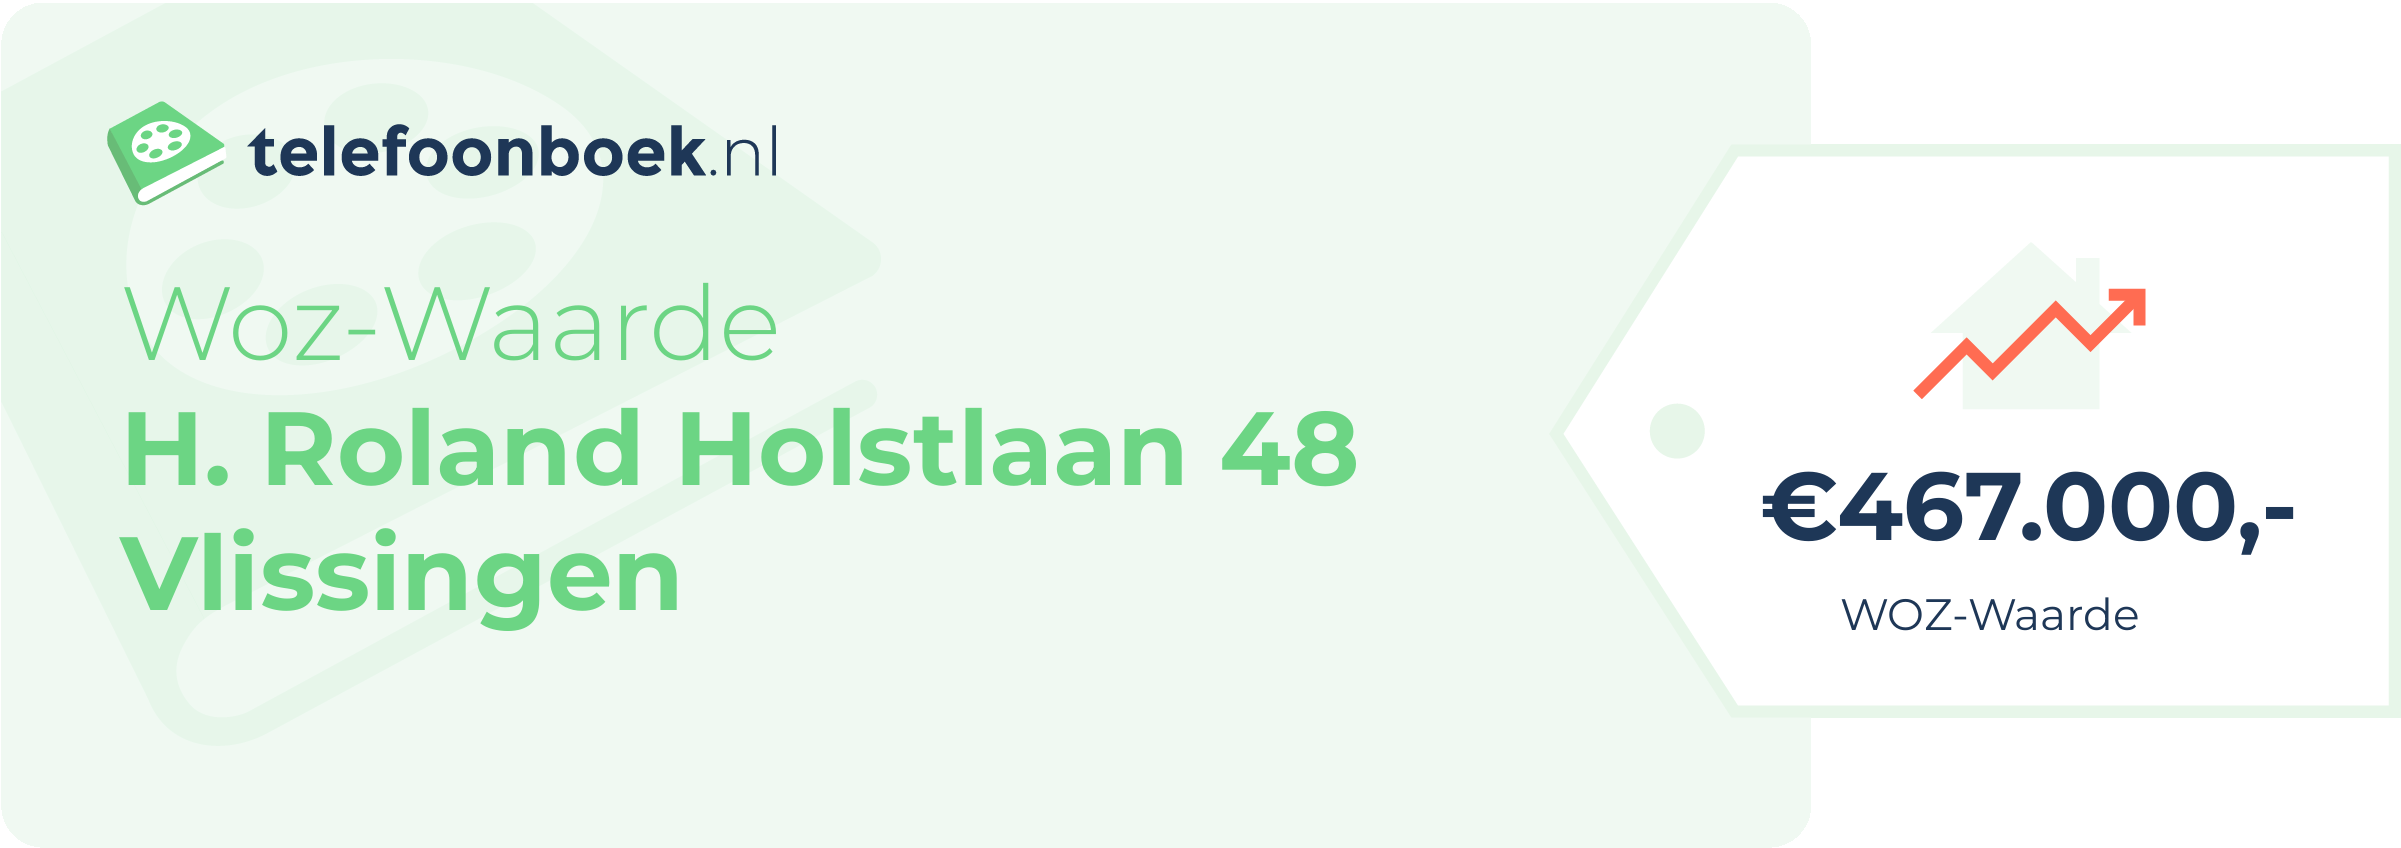 WOZ-waarde H. Roland Holstlaan 48 Vlissingen